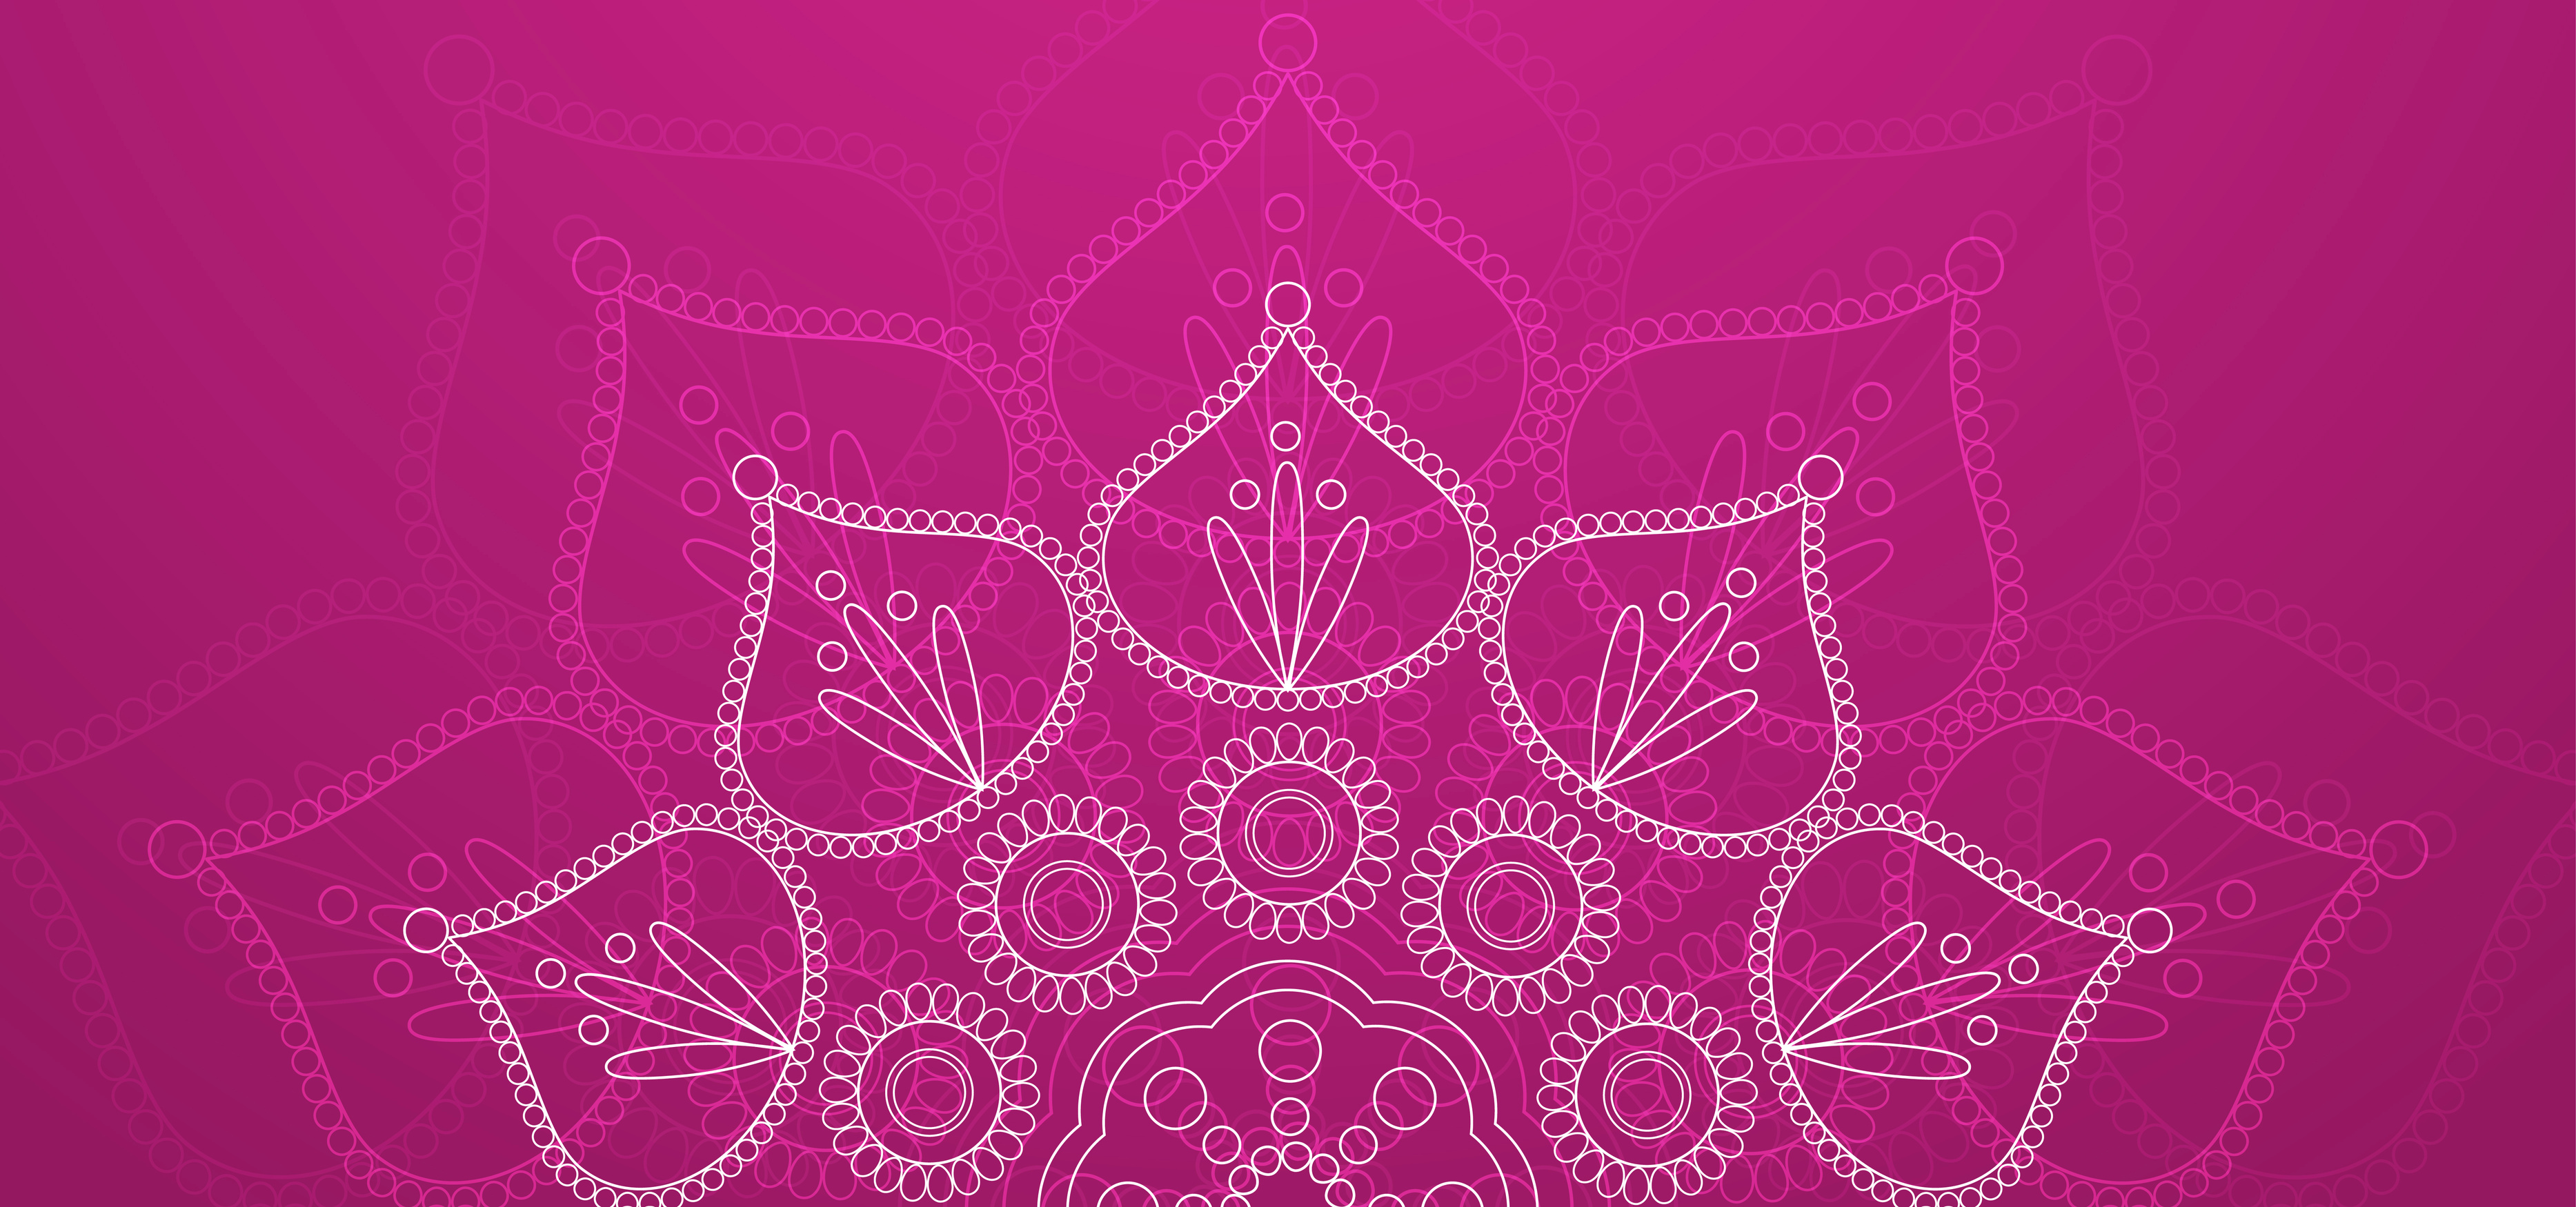 Mandala Pattern on Pink Background